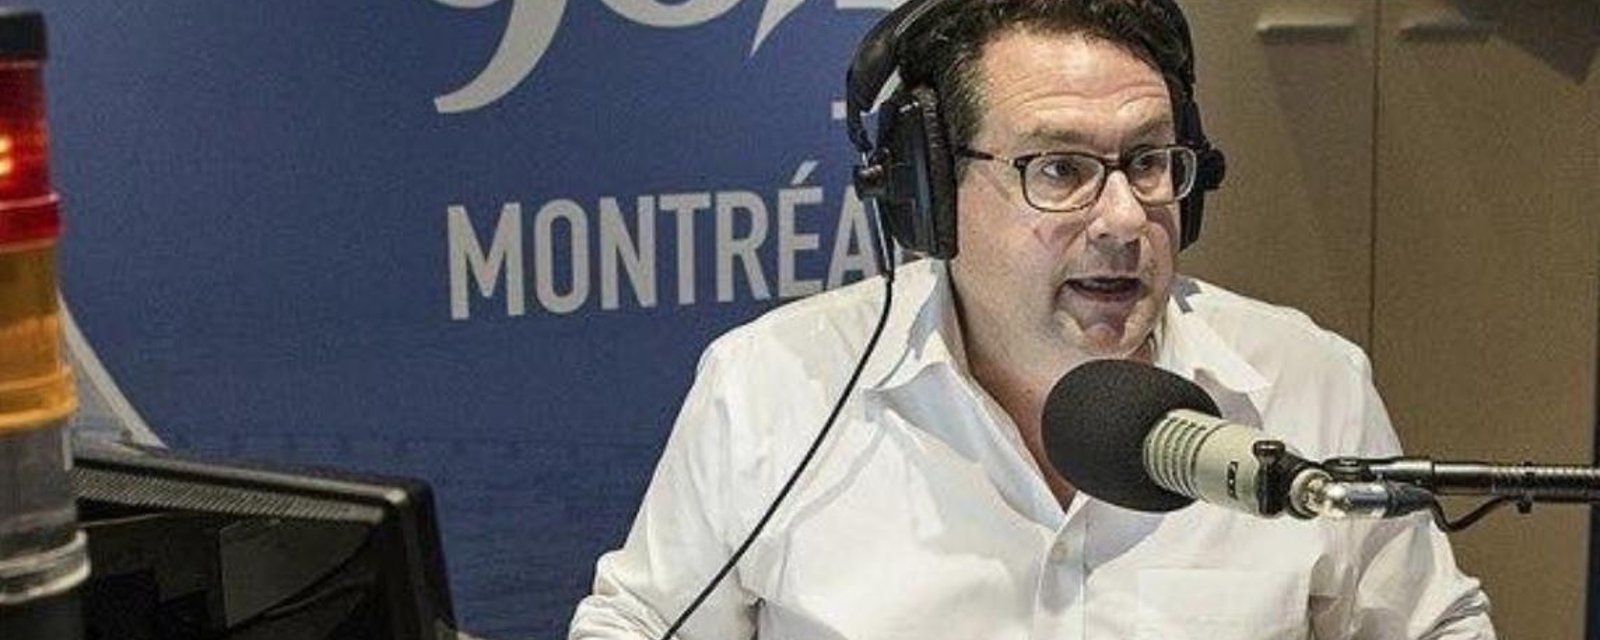 Bernard Drainville se fait traiter de gros en direct à la radio par une auditrice, suite au scandale de Maxi